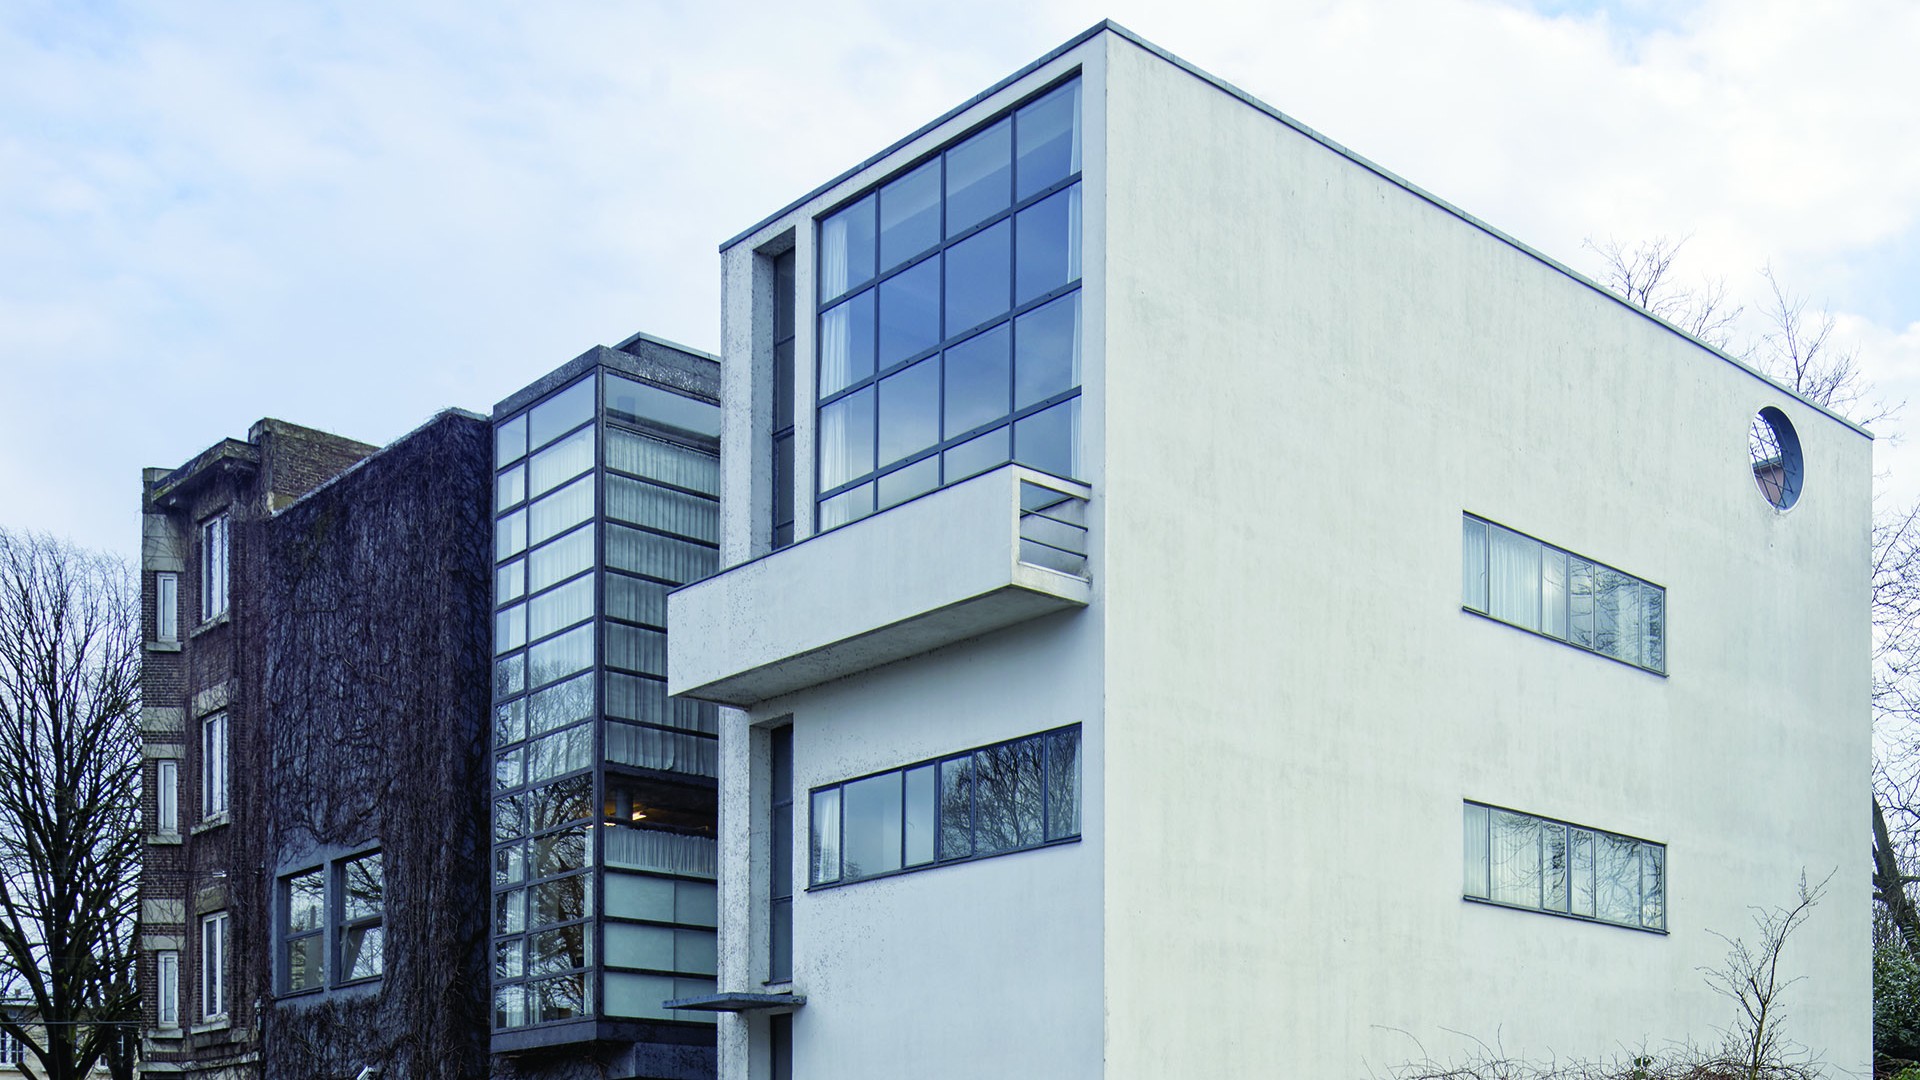 Agenda Tarsila Indica exposição “Le Corbusier”, suíço considerado fundador da arquitetura moderna